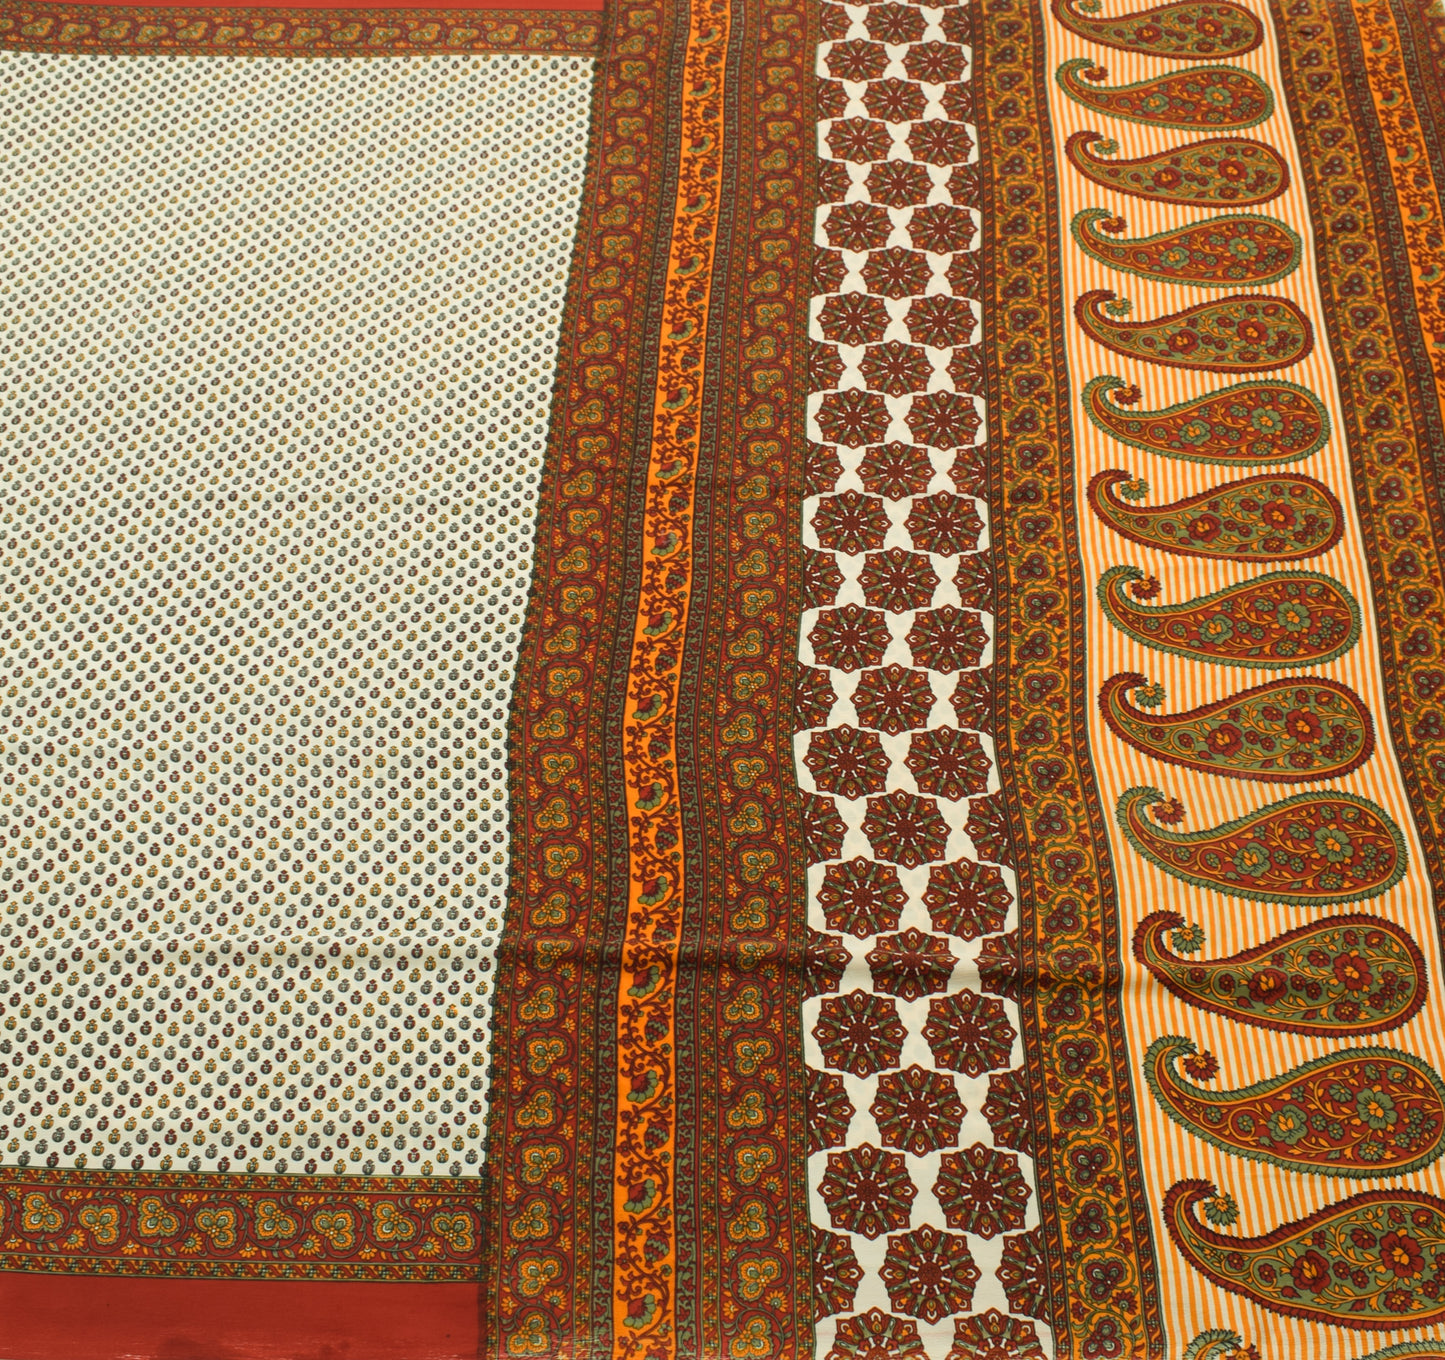 Orange White Floral Sari Fabric